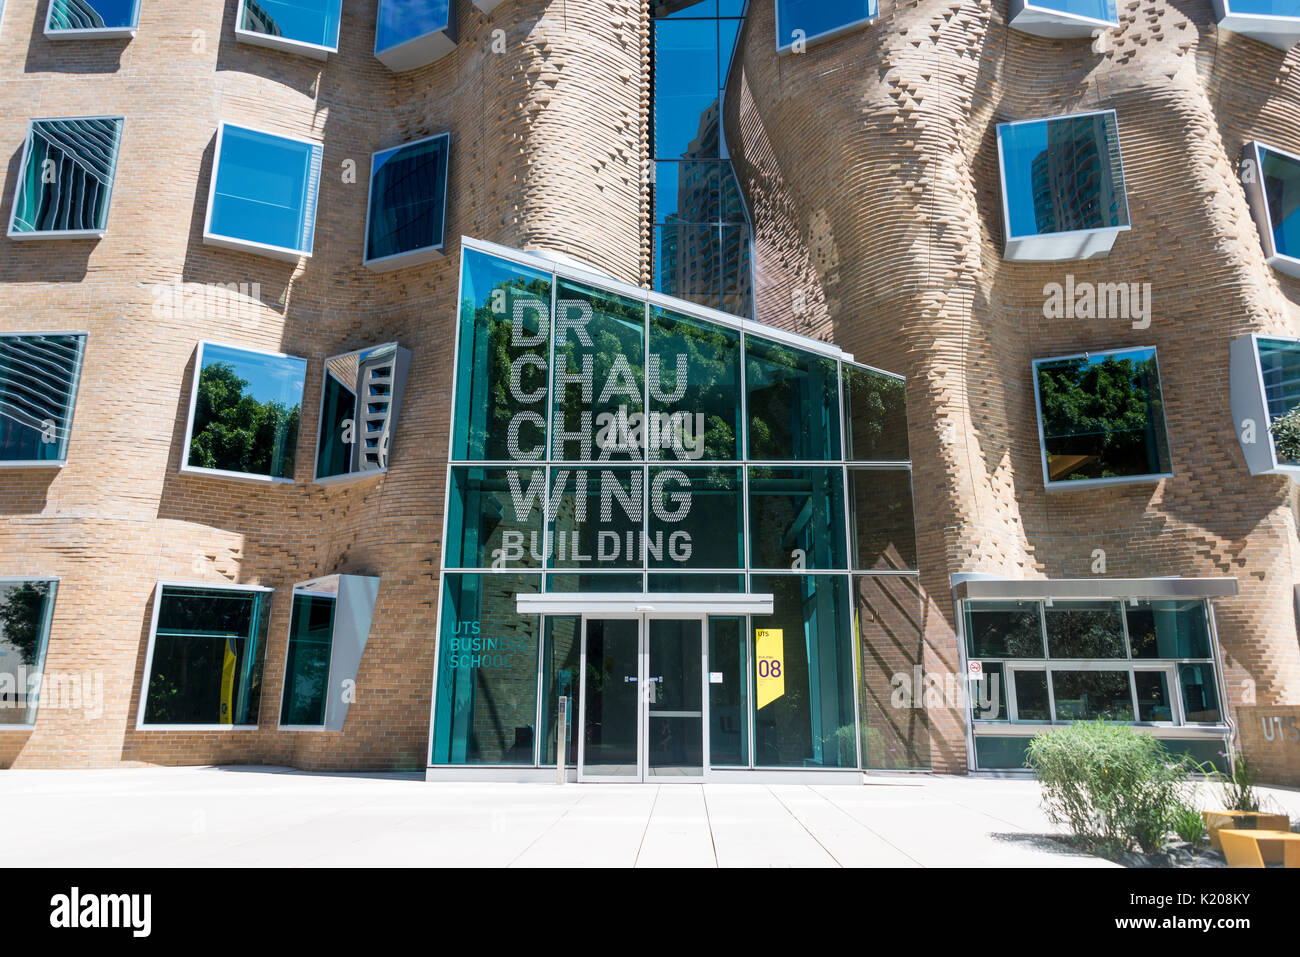 L'architecture moderne, le Dr Chau aile Chak Building, University of Technology Sydney, New South Wales, Australia Banque D'Images